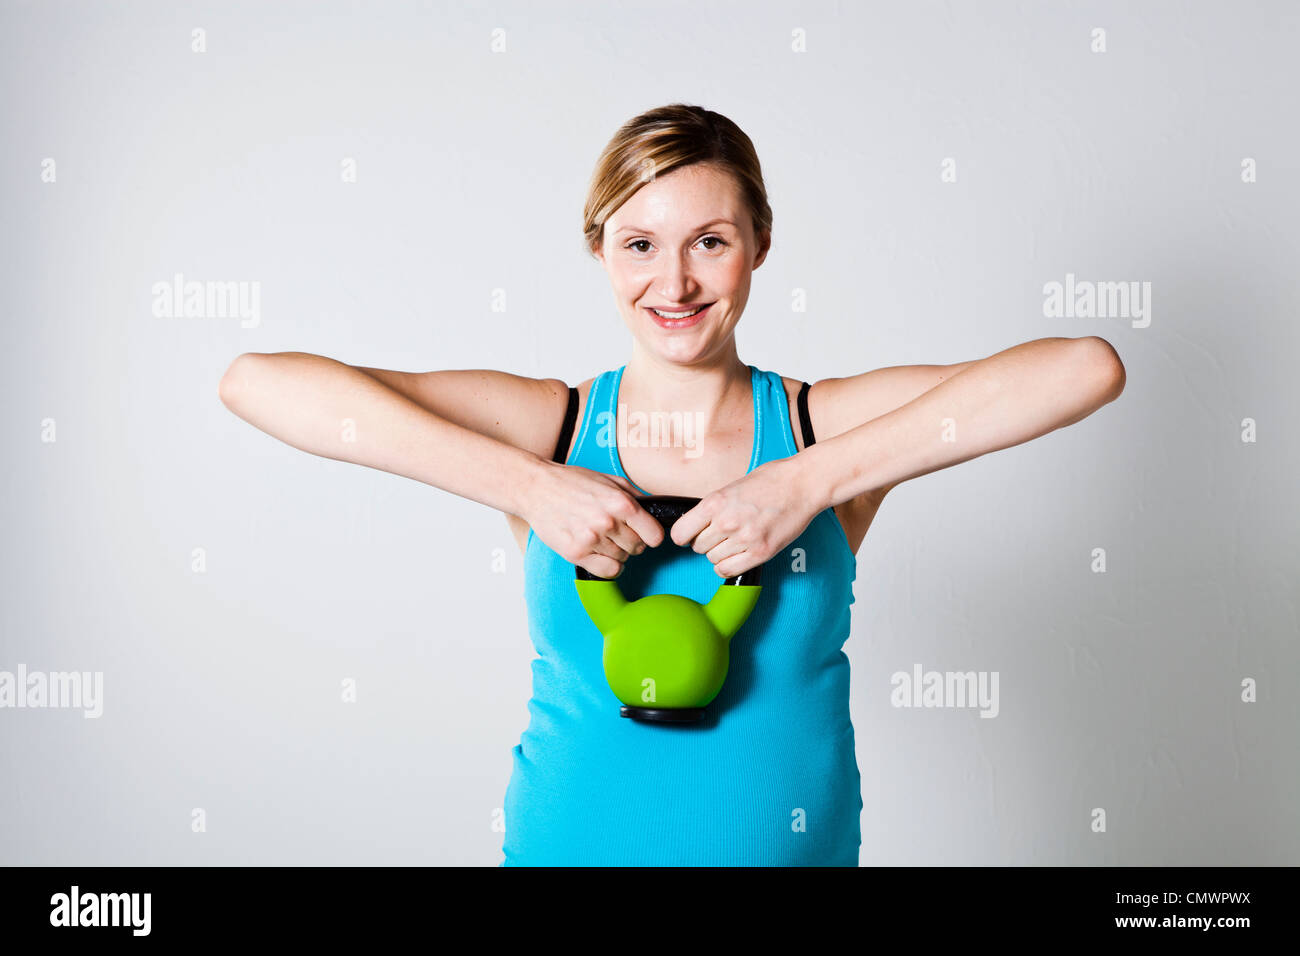 Femme enceinte faire l'exercice de renforcement musculaire de l'épaule avec kettlebell Banque D'Images